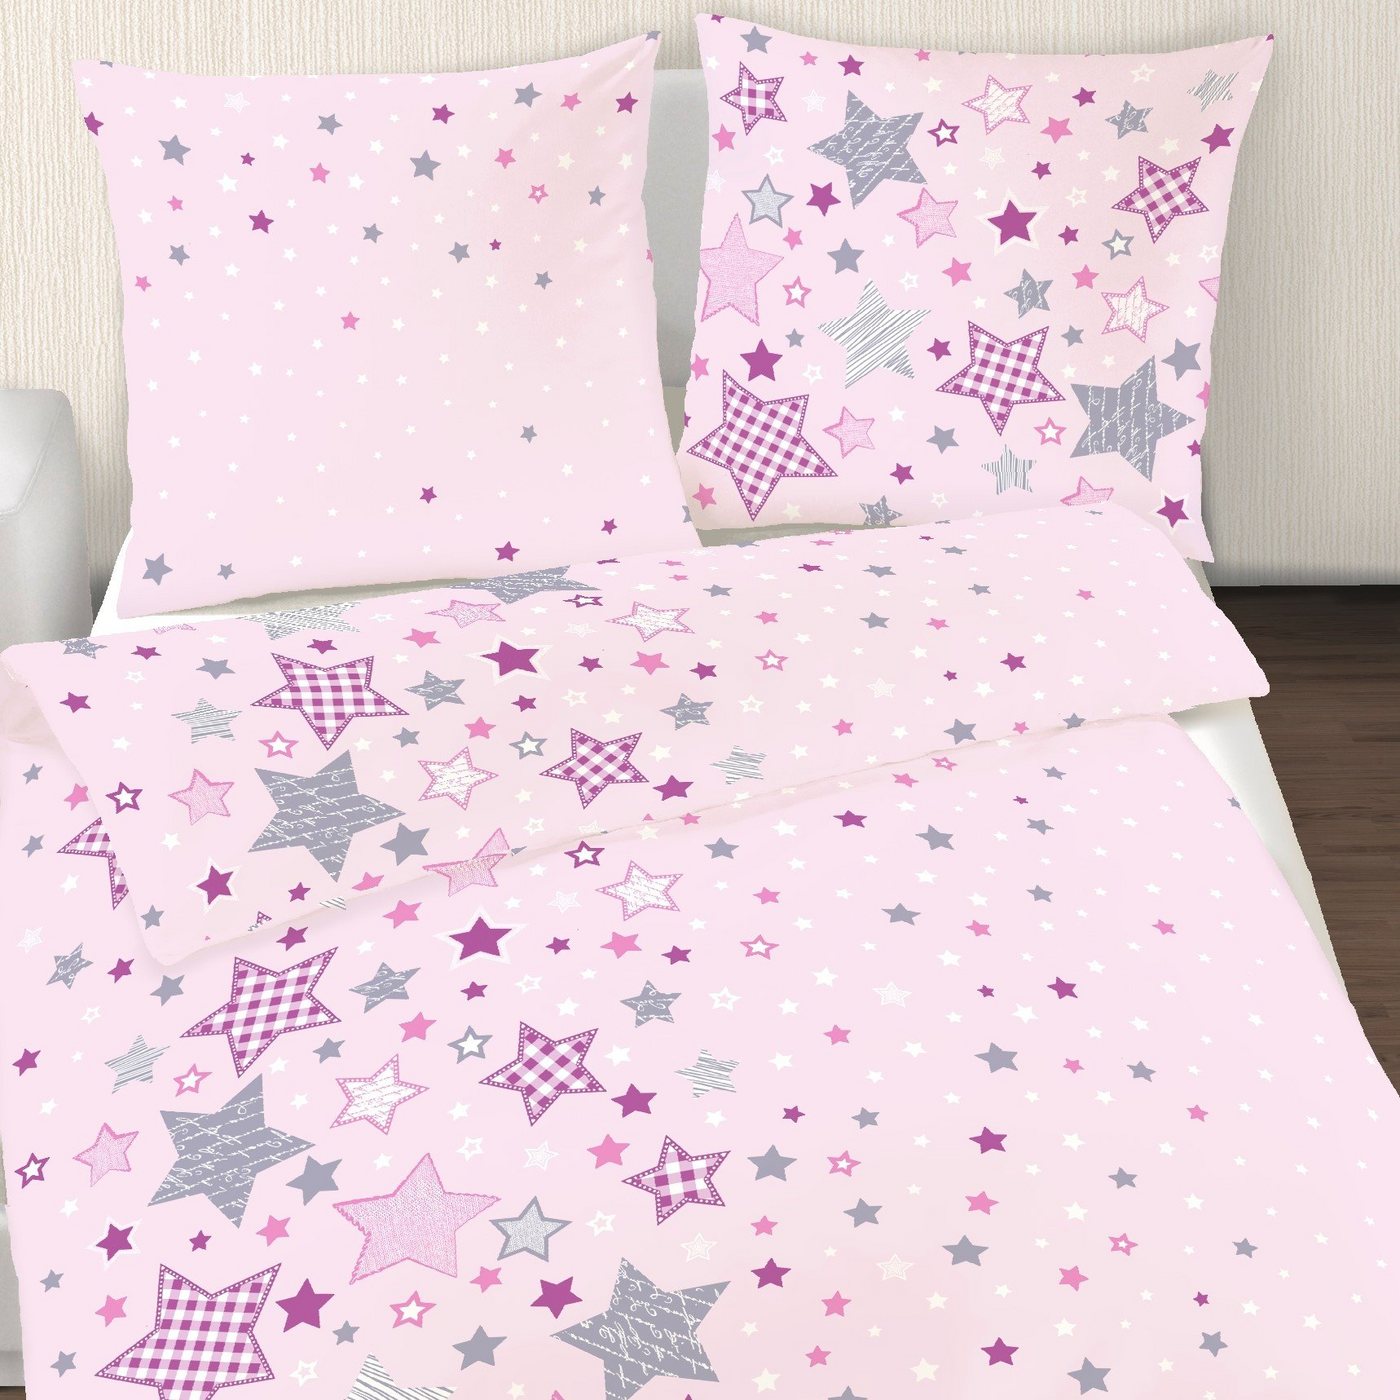 Bettwäsche Sterne 135x200 + 80x80 cm, 100 % Baumwolle, MTOnlinehandel, Biber, 2 teilig, Kinderbettwäsche mit vielen Sternen & Sternchen in rosa, lila & grau von MTOnlinehandel